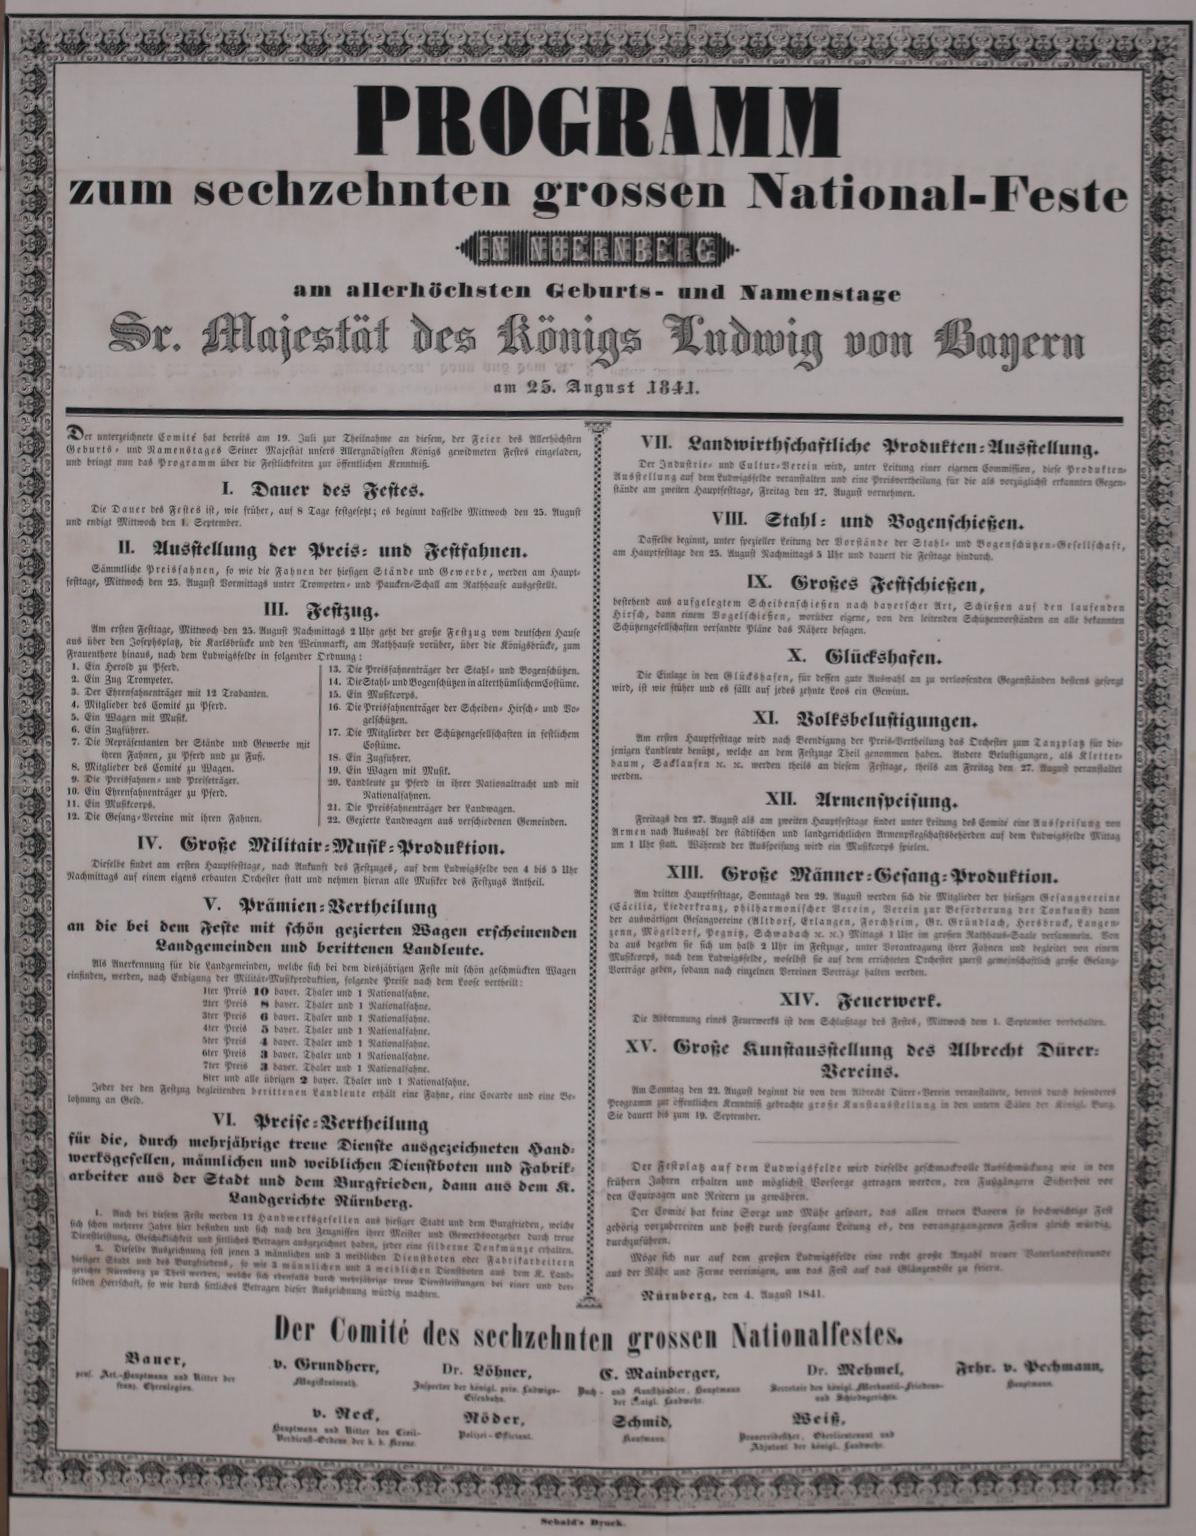  - Programm zum sechzehnten grossen National-Feste in Nrnberg am allerhchsten Geburts- und Namenstage Sr. Majestt des Knigs Ludwig von Bayern..